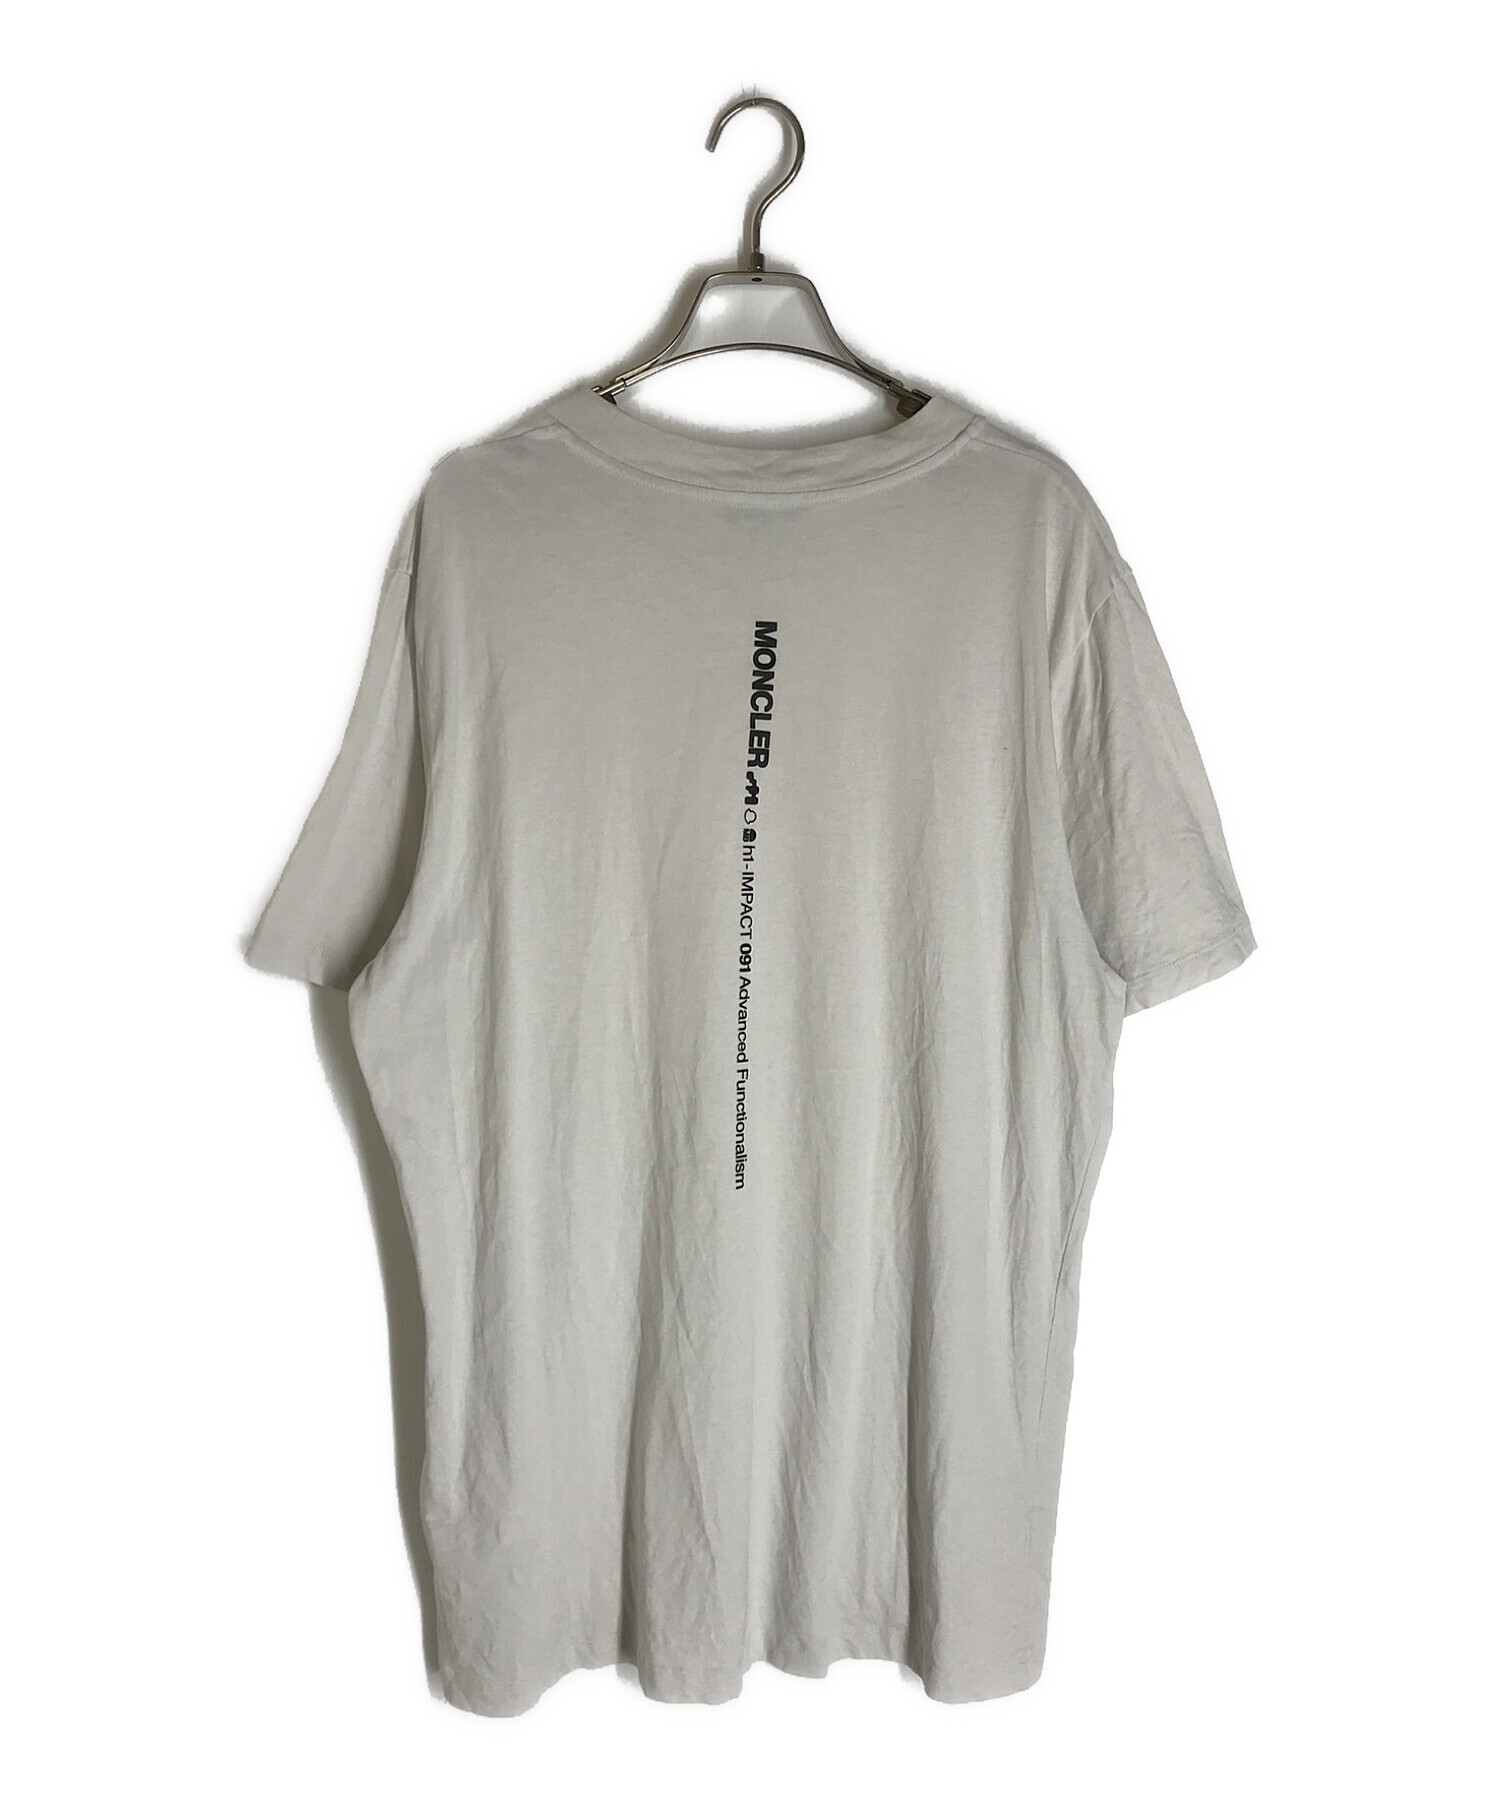 MONCLER (モンクレール) ワンポイントクルーネックTシャツ ライトグレー サイズ:S